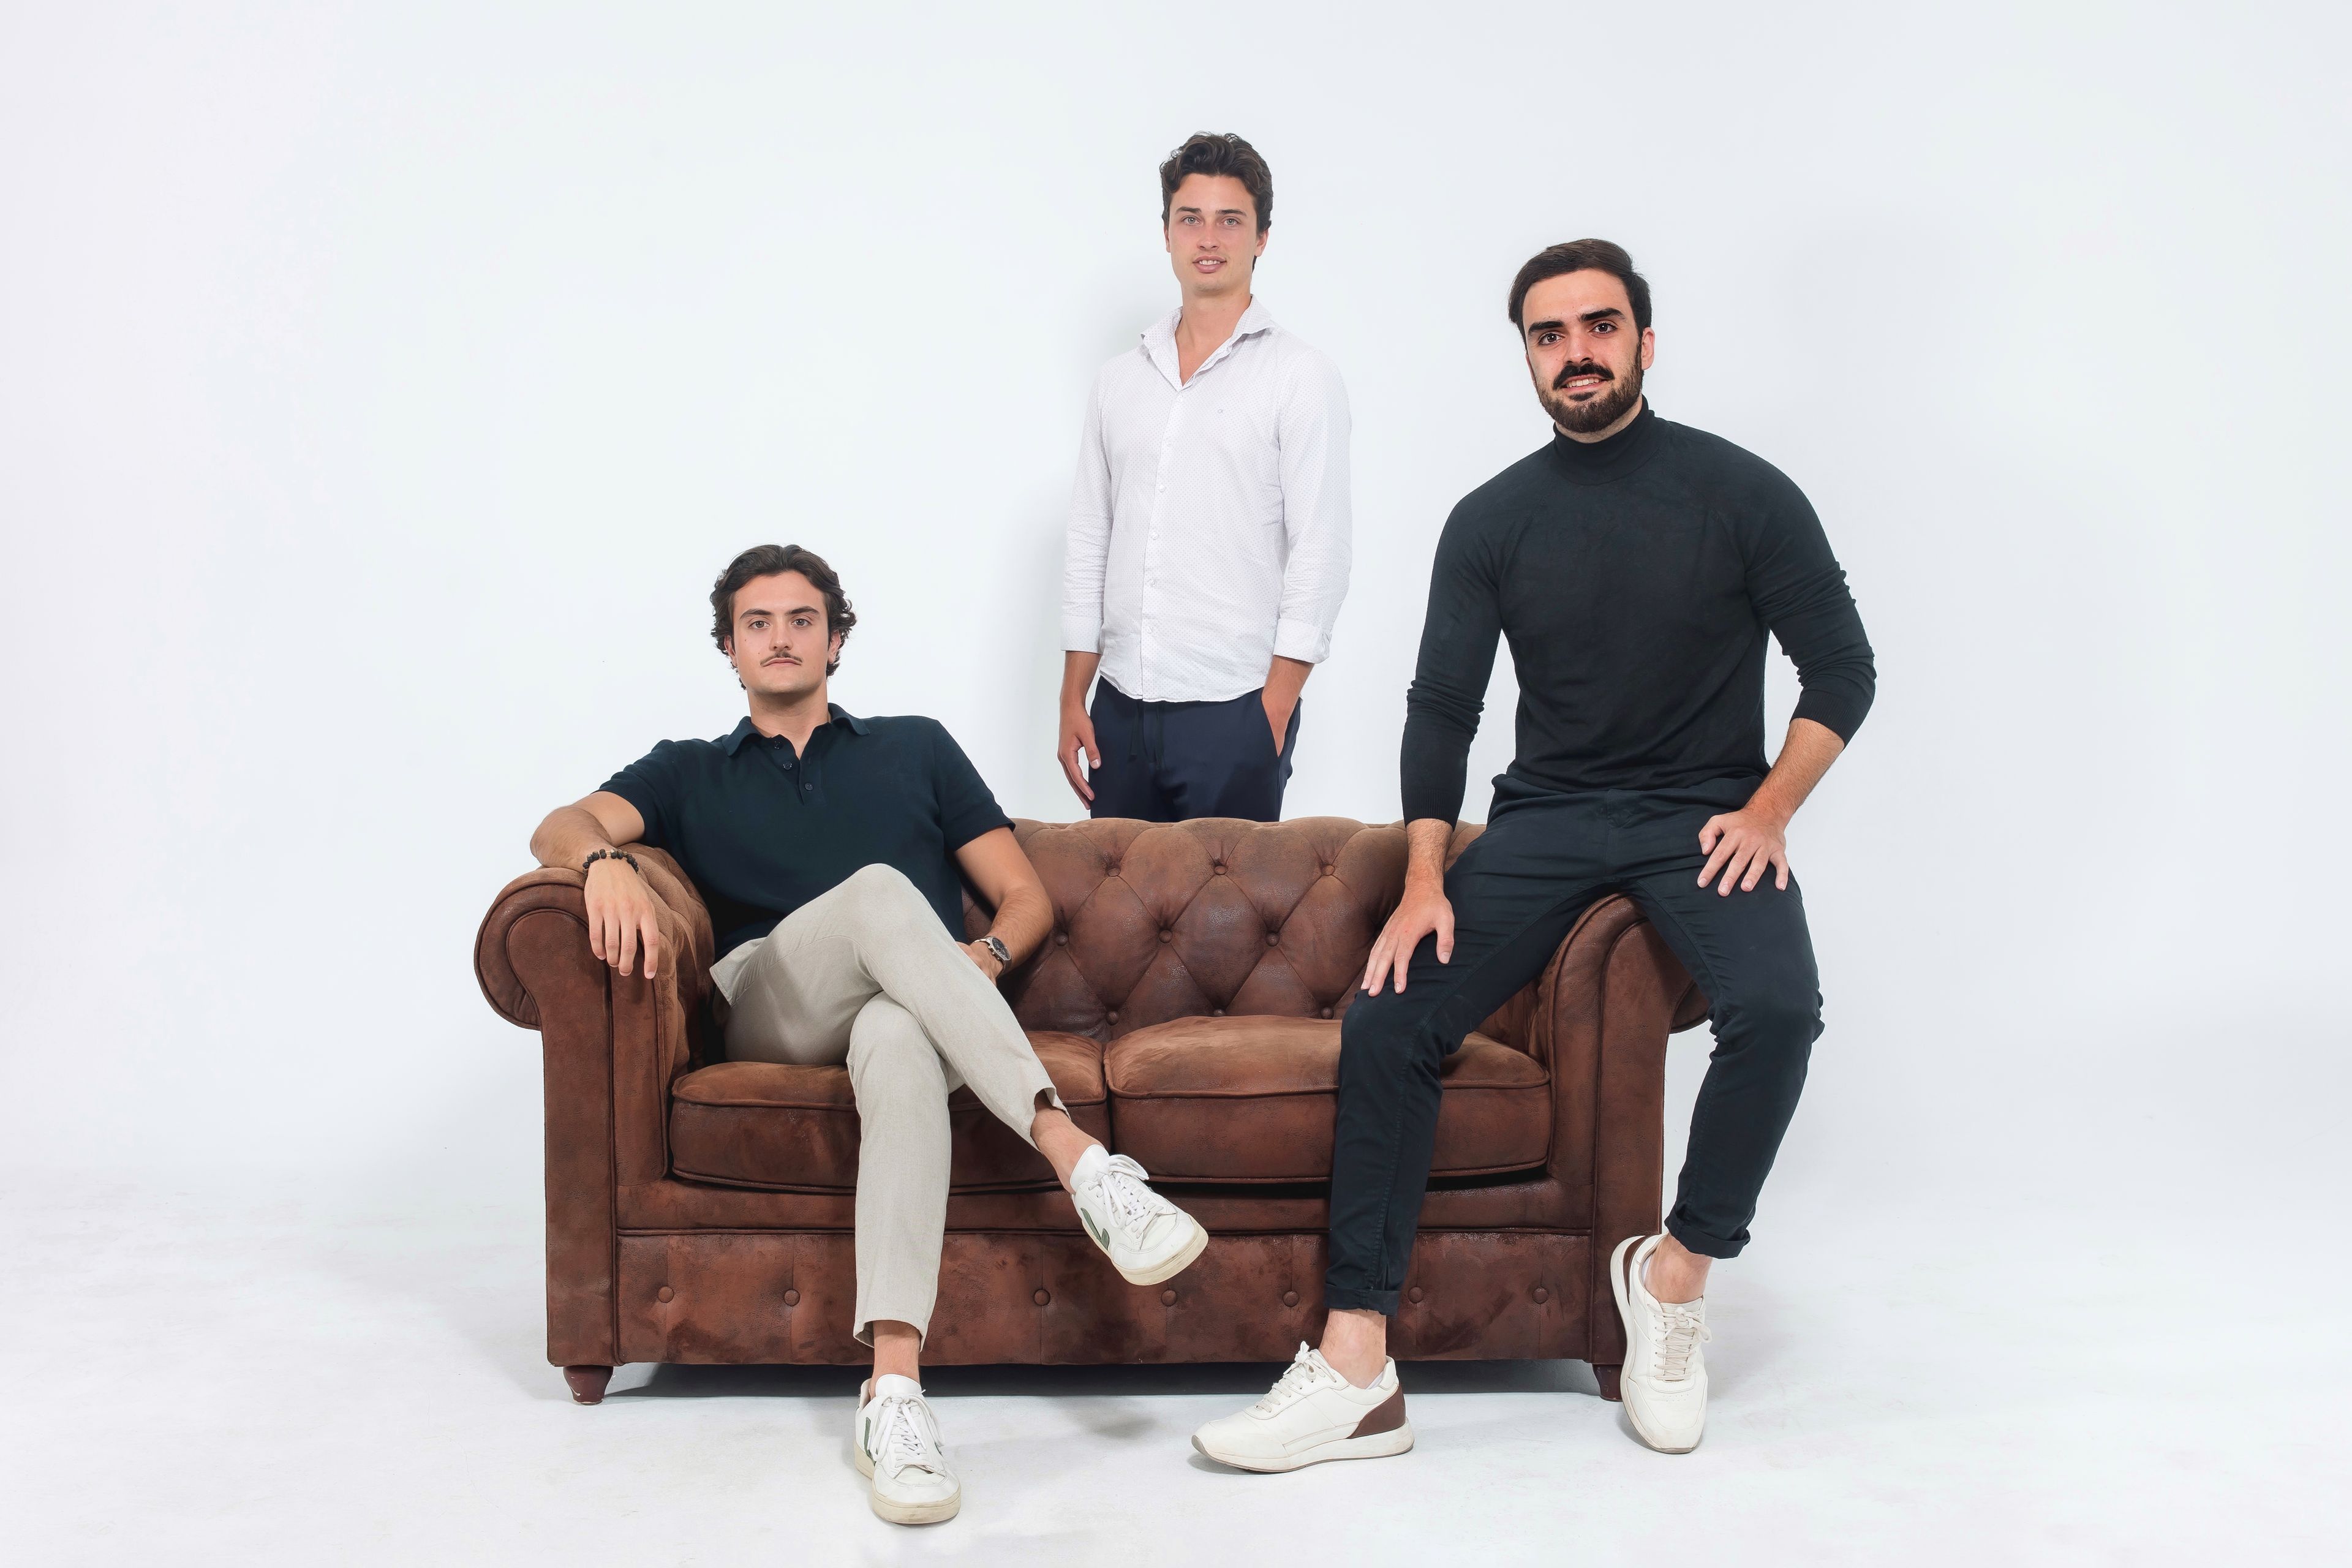 De izquierda a derecha, los cofundadores de Enzo Ventures, Iván Fernández, Markus Törstedt y Edgar Vicente. Enzo Ventures